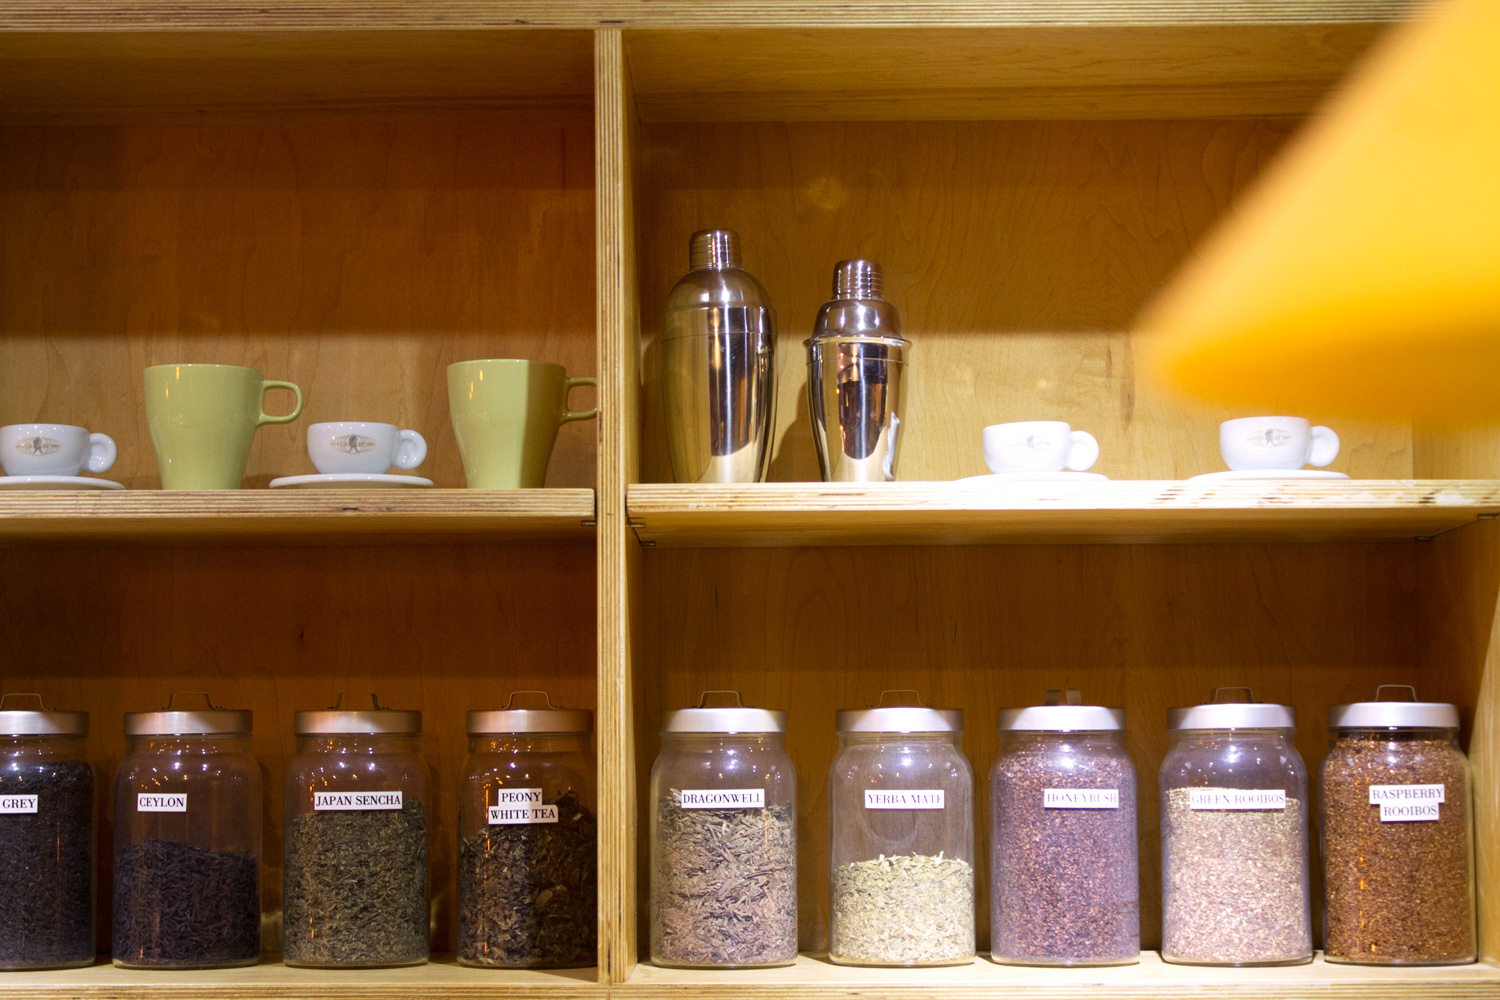 Hanco's brewed tea leaves on shelf display